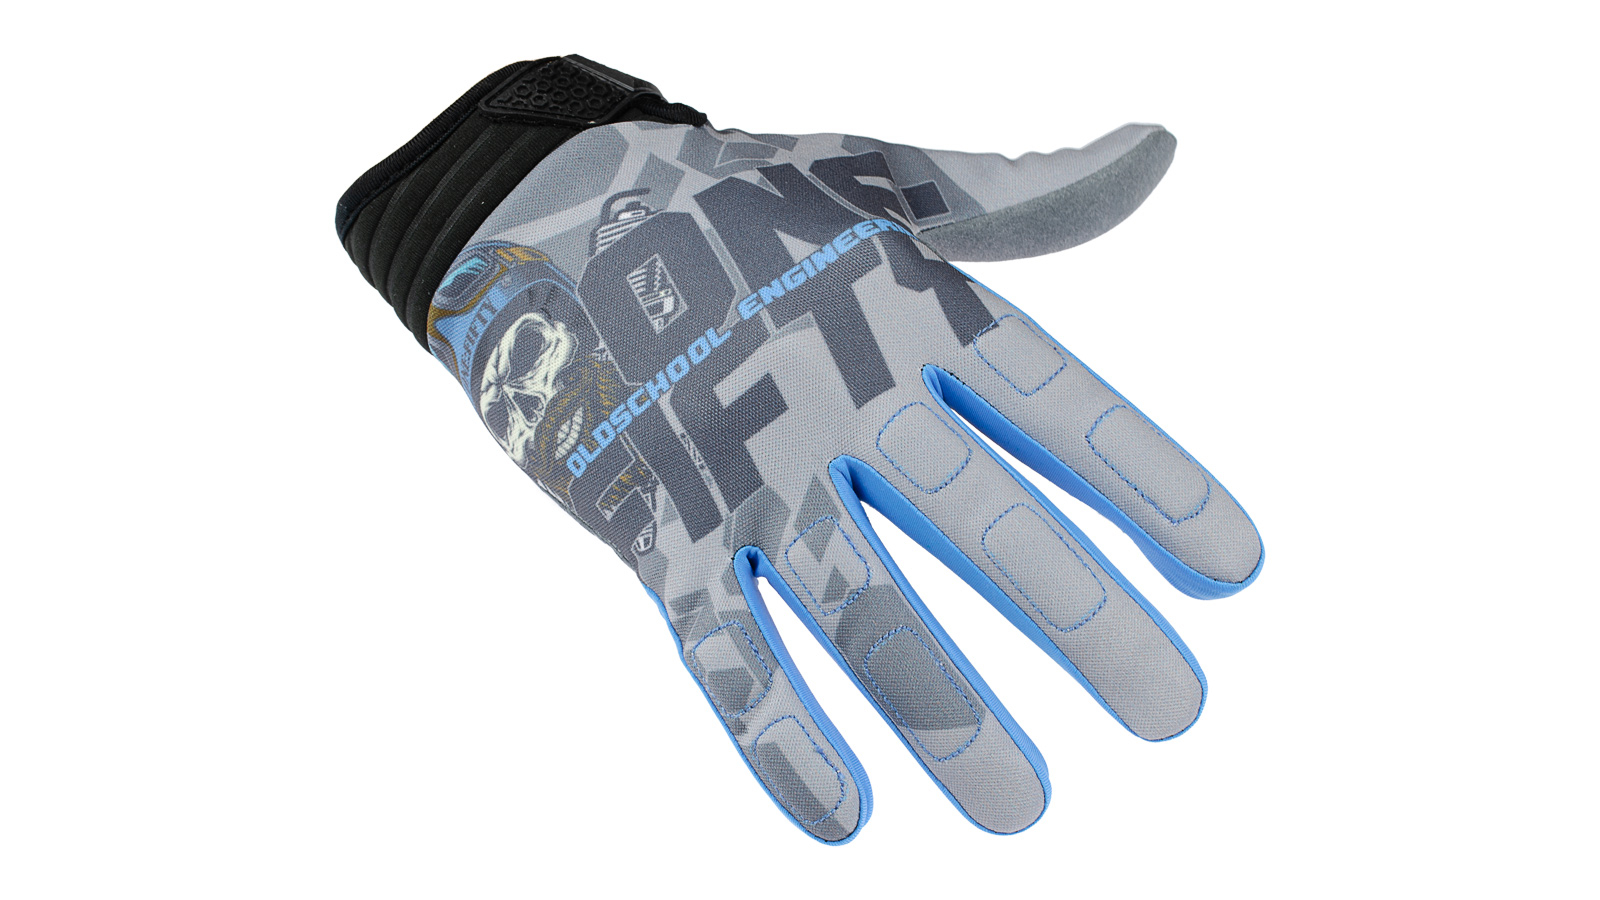 Handschuhe ONE:FIFTY blau